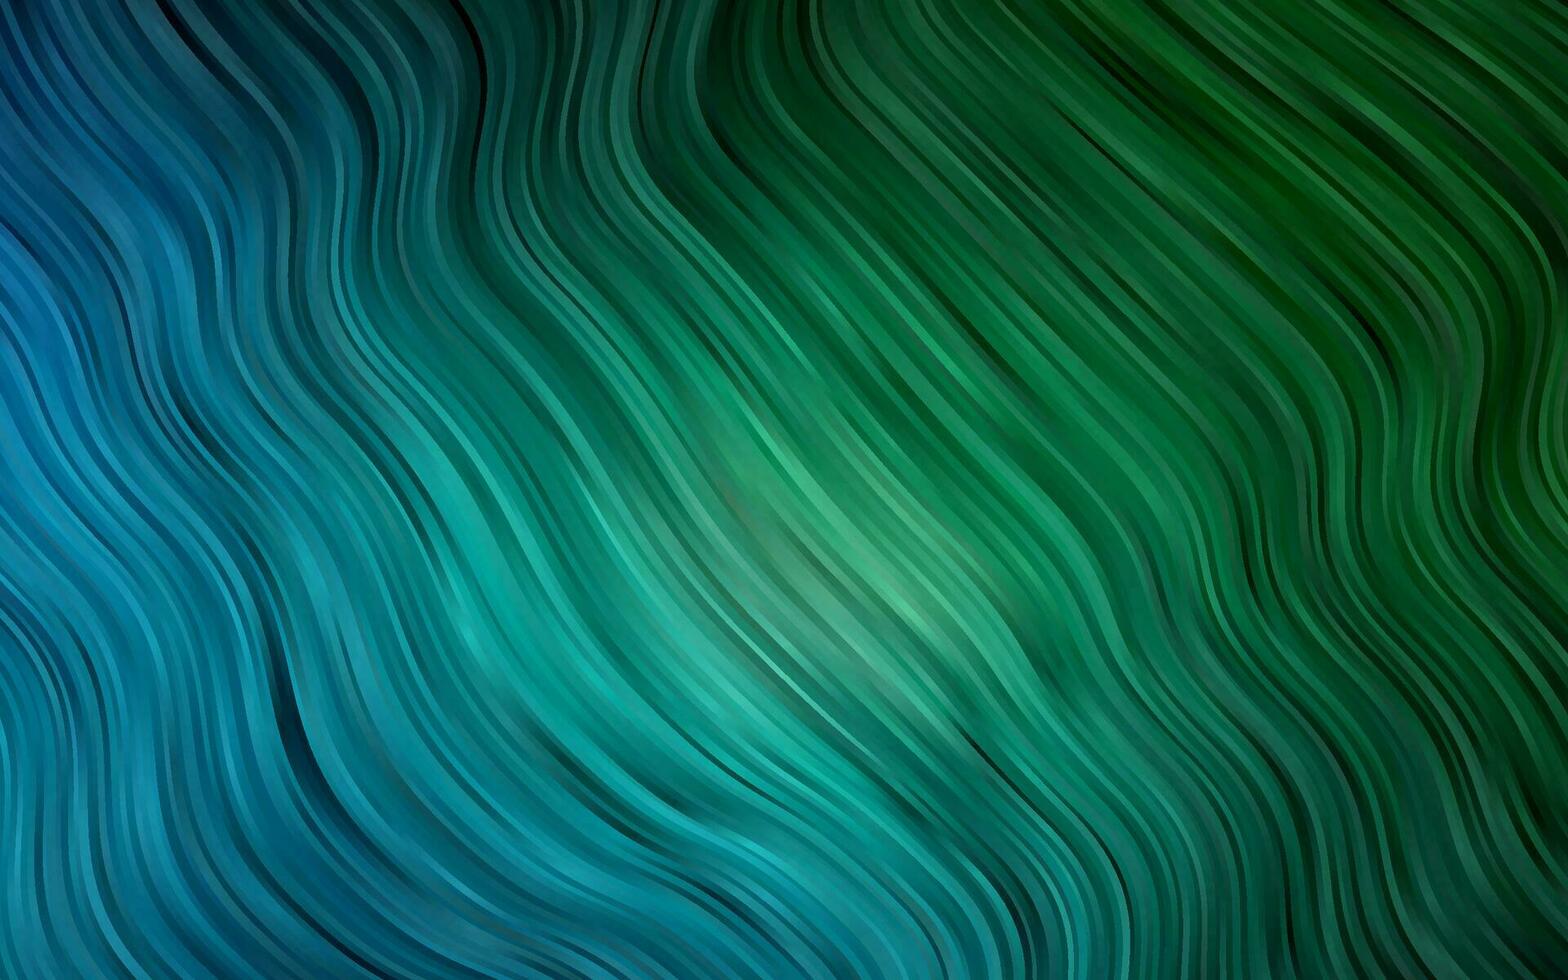 mörkblå, grön vektormall med flytande former. vektor